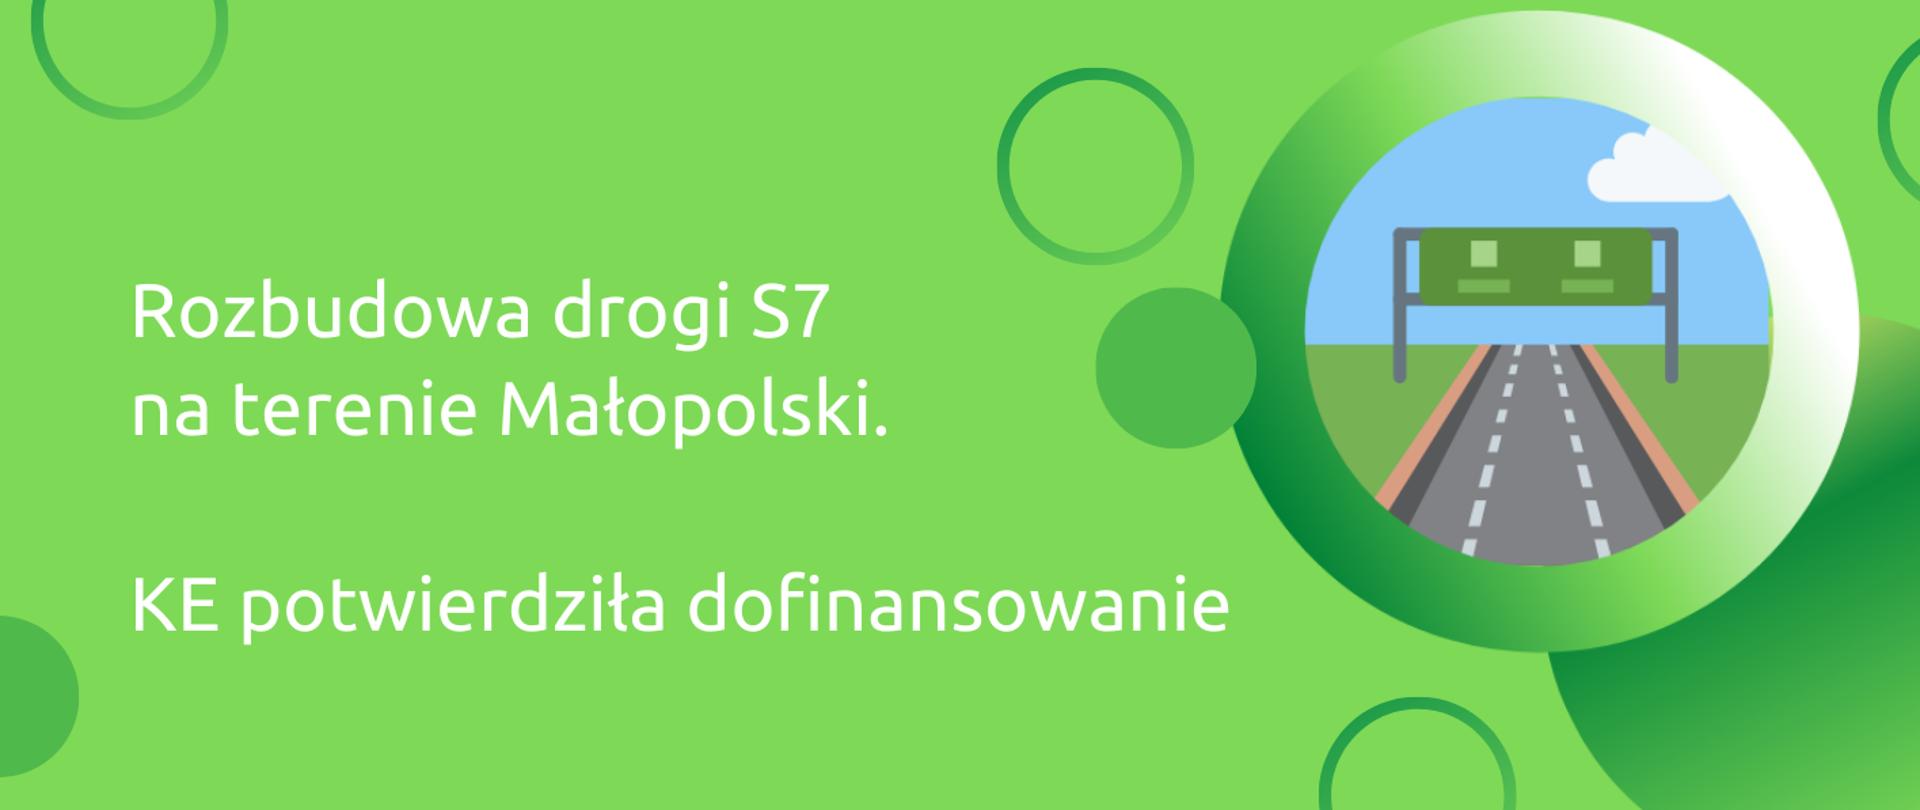 Rozbudowa drogi S7 na terenie Małopolski. KE potwierdziła dofinansowanie GOV — OK